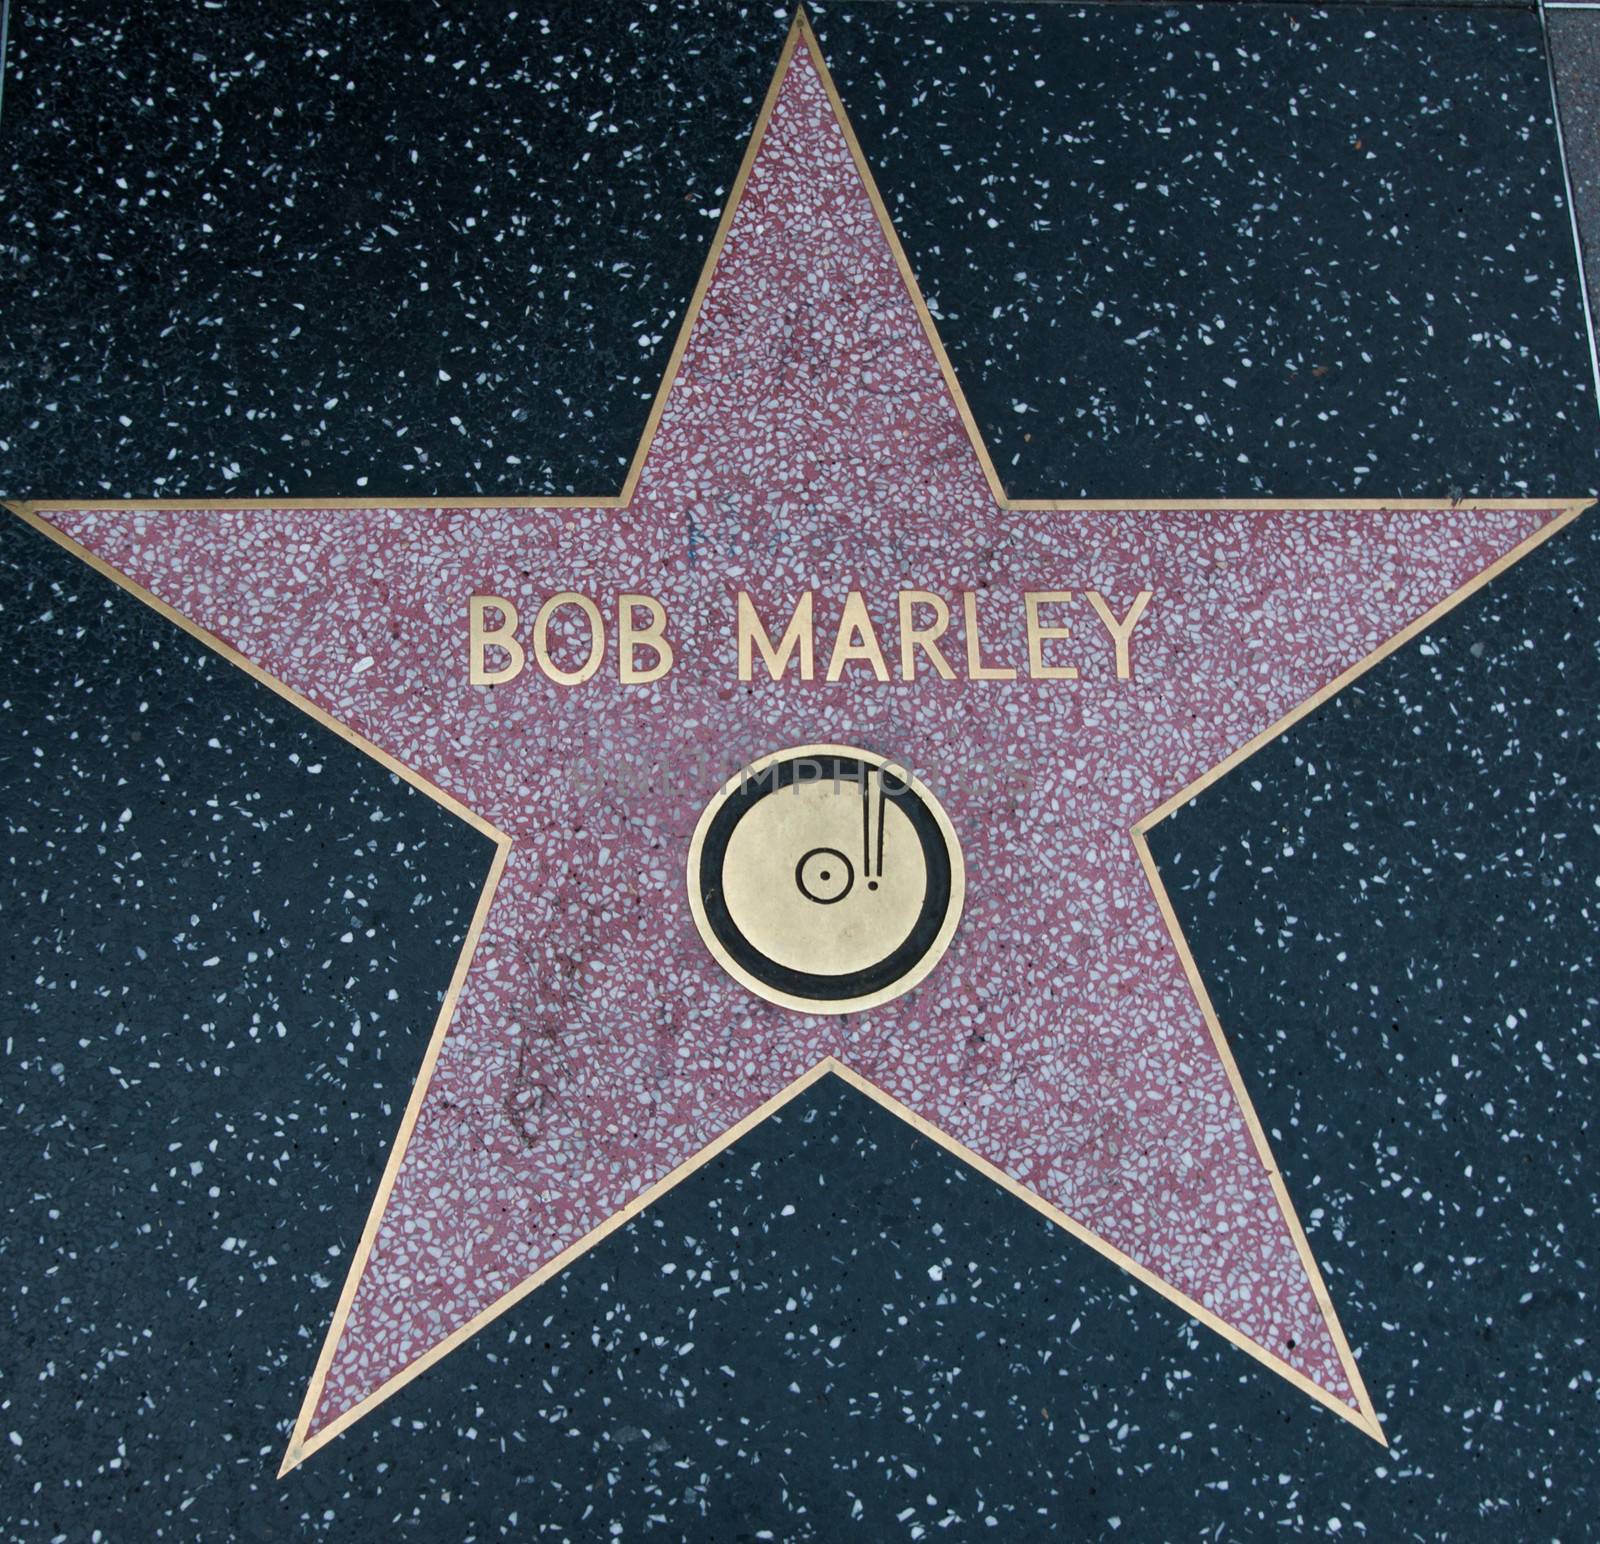 Bob Marley Hollywood Star on street Los Angeles 2013